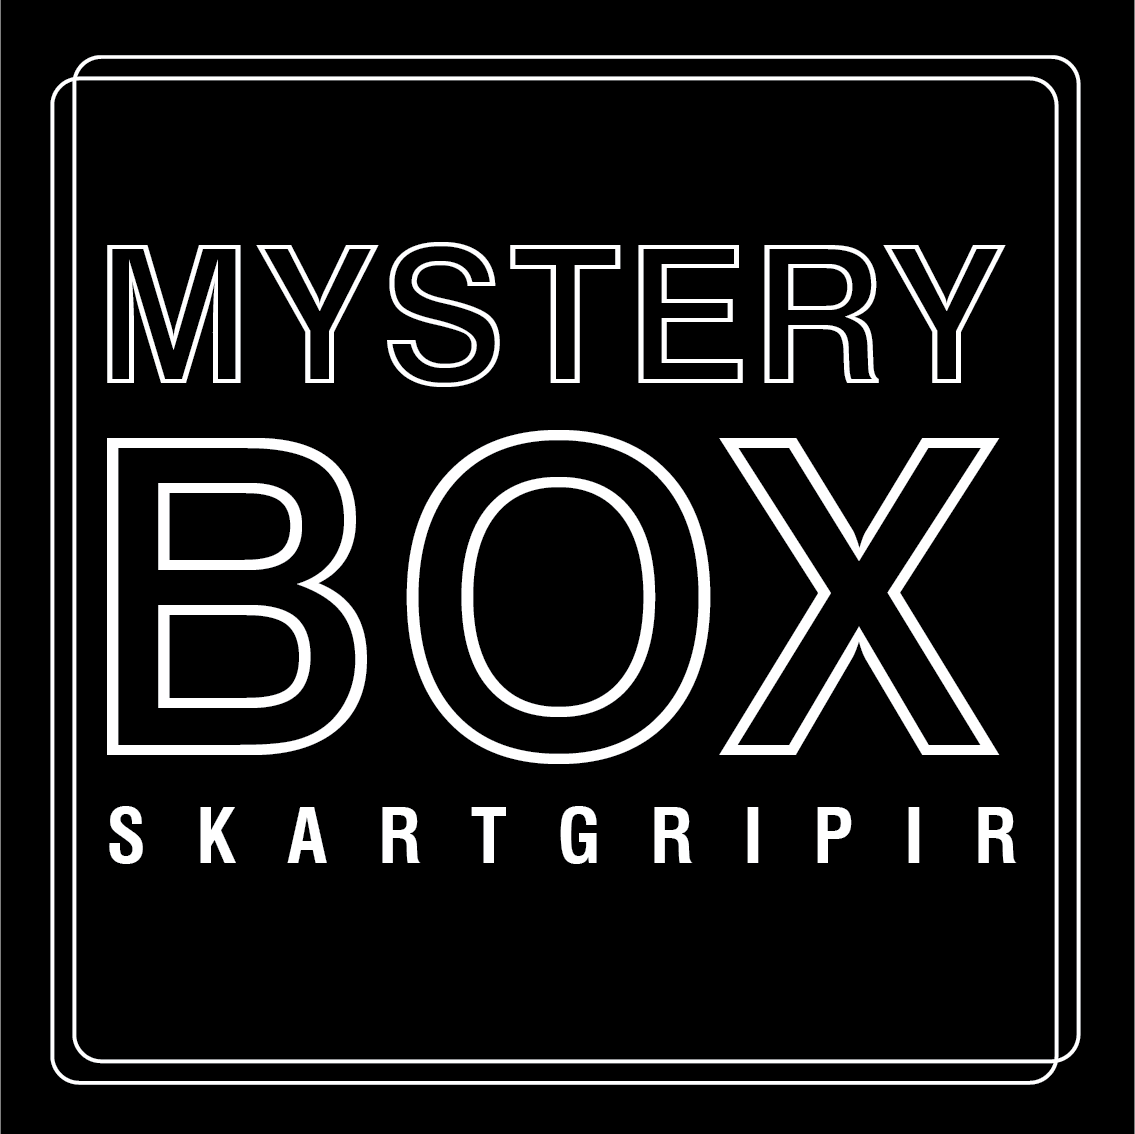 MYSTERY BOX lítill - skartgripir